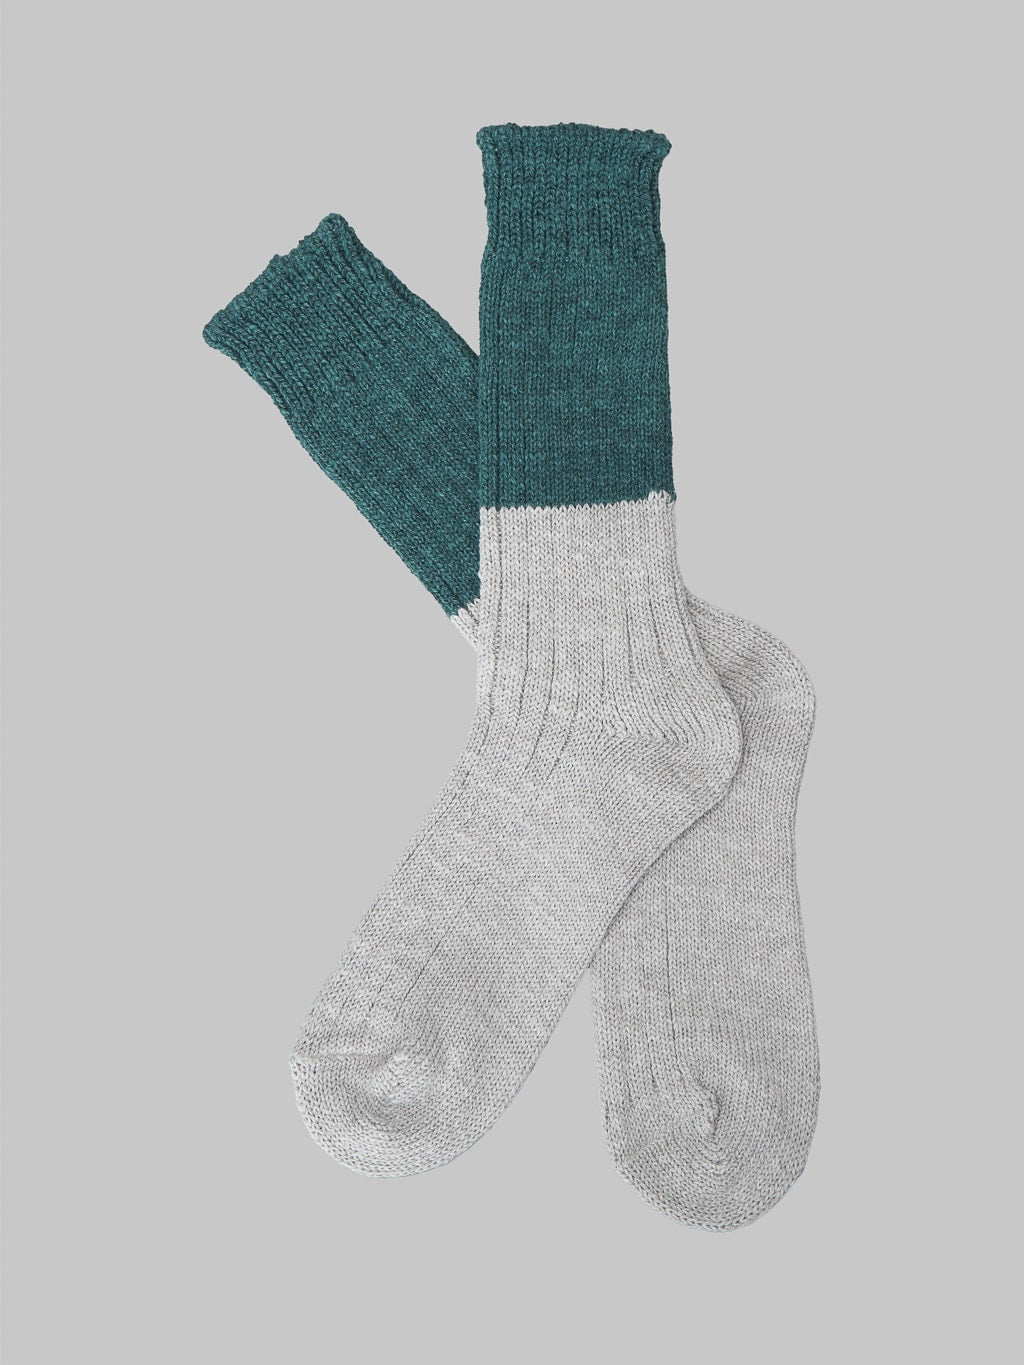 Nishiguchi Kutsushita Wool Cotton Slab Socks Green Pair